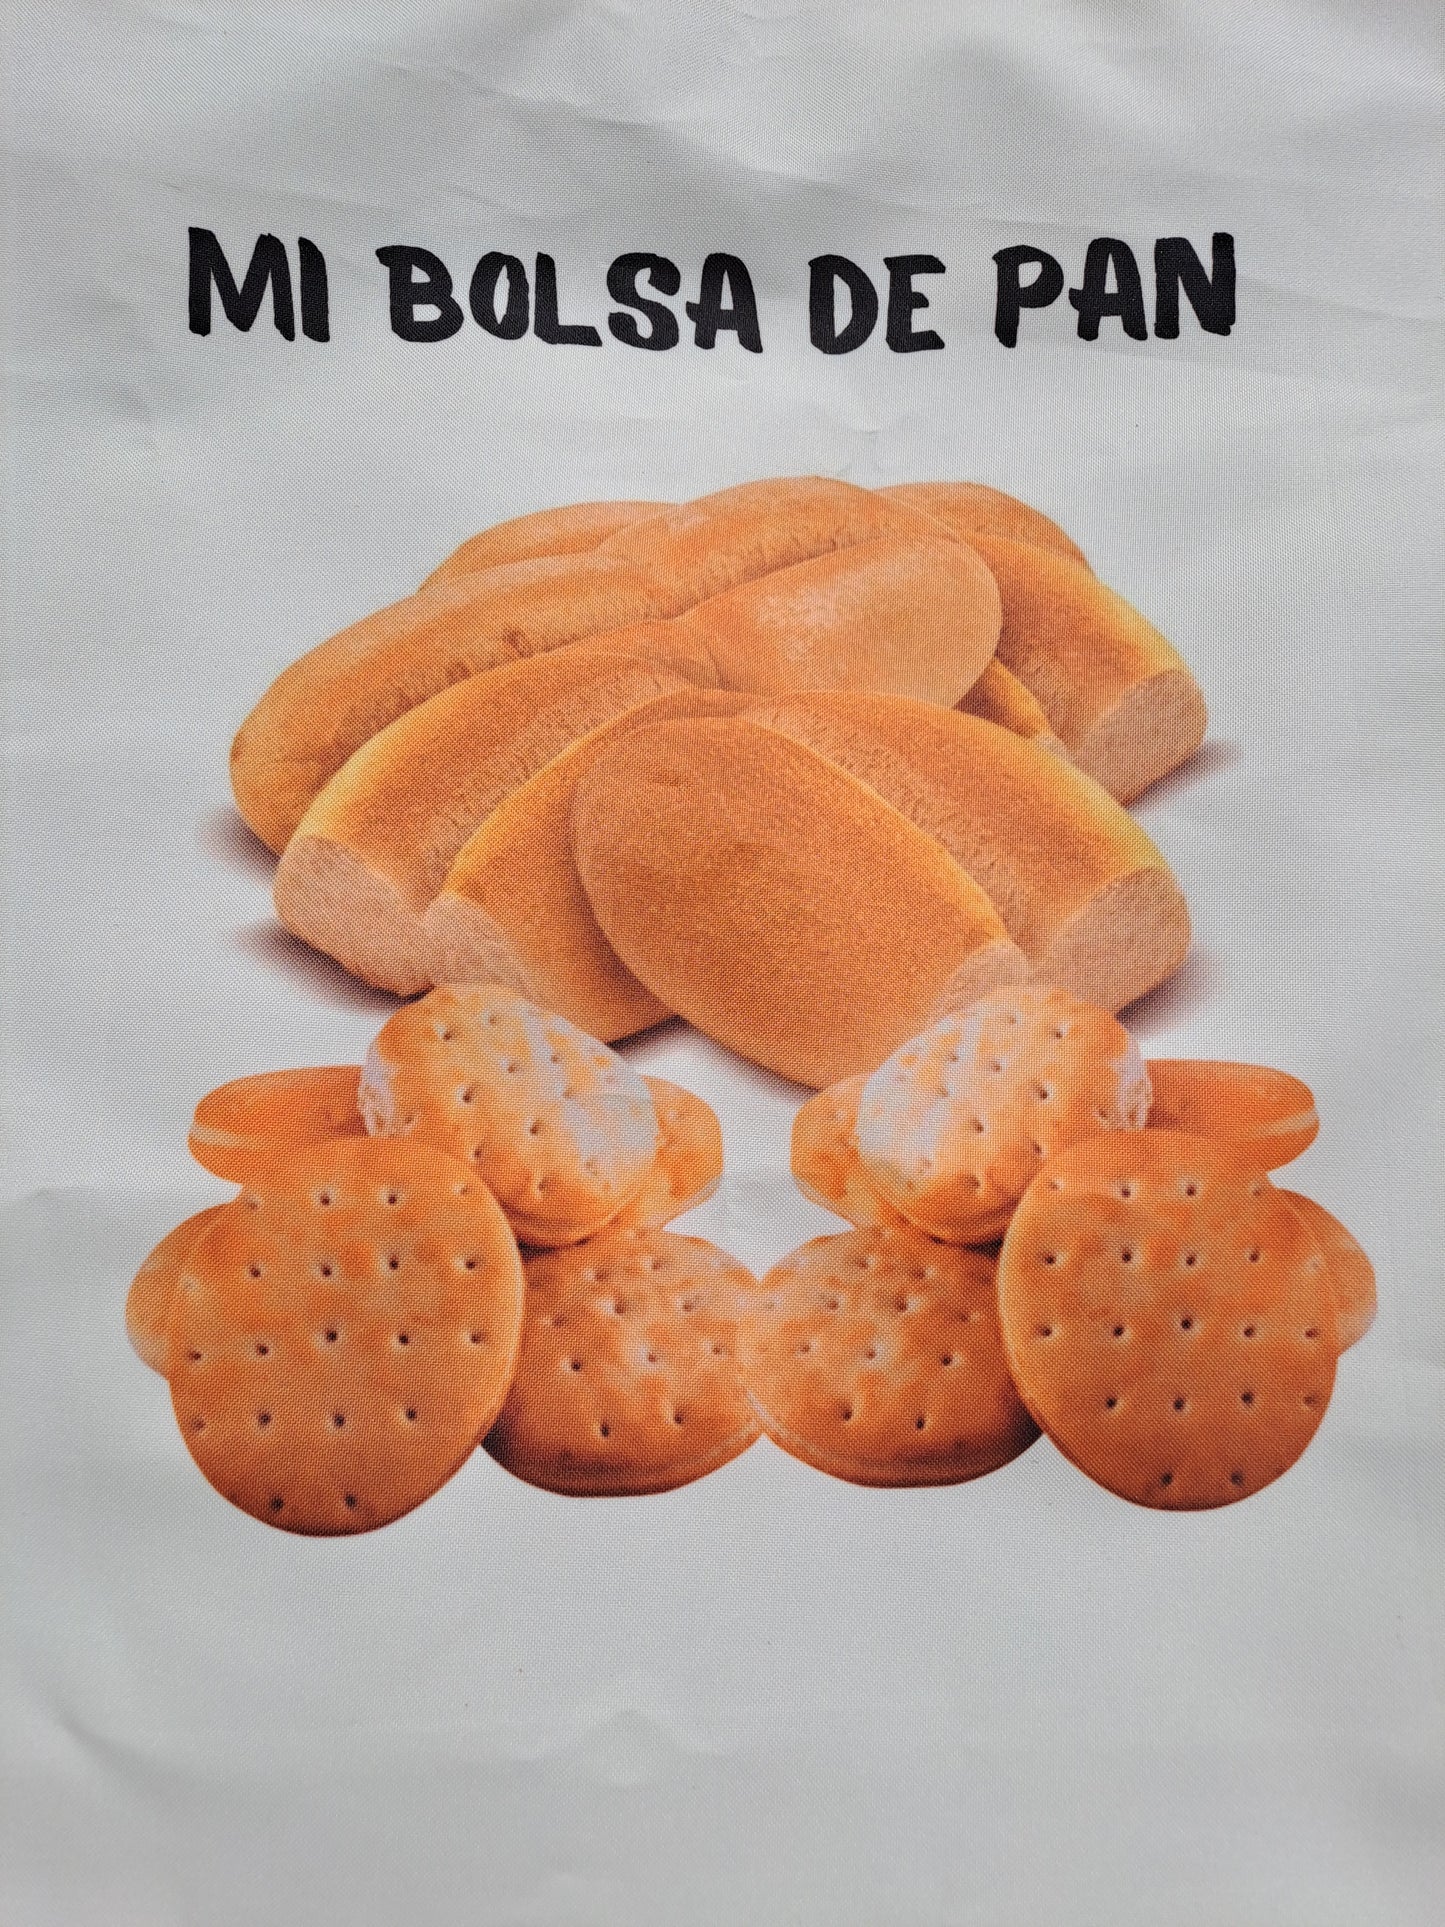 Bolsa para el pan